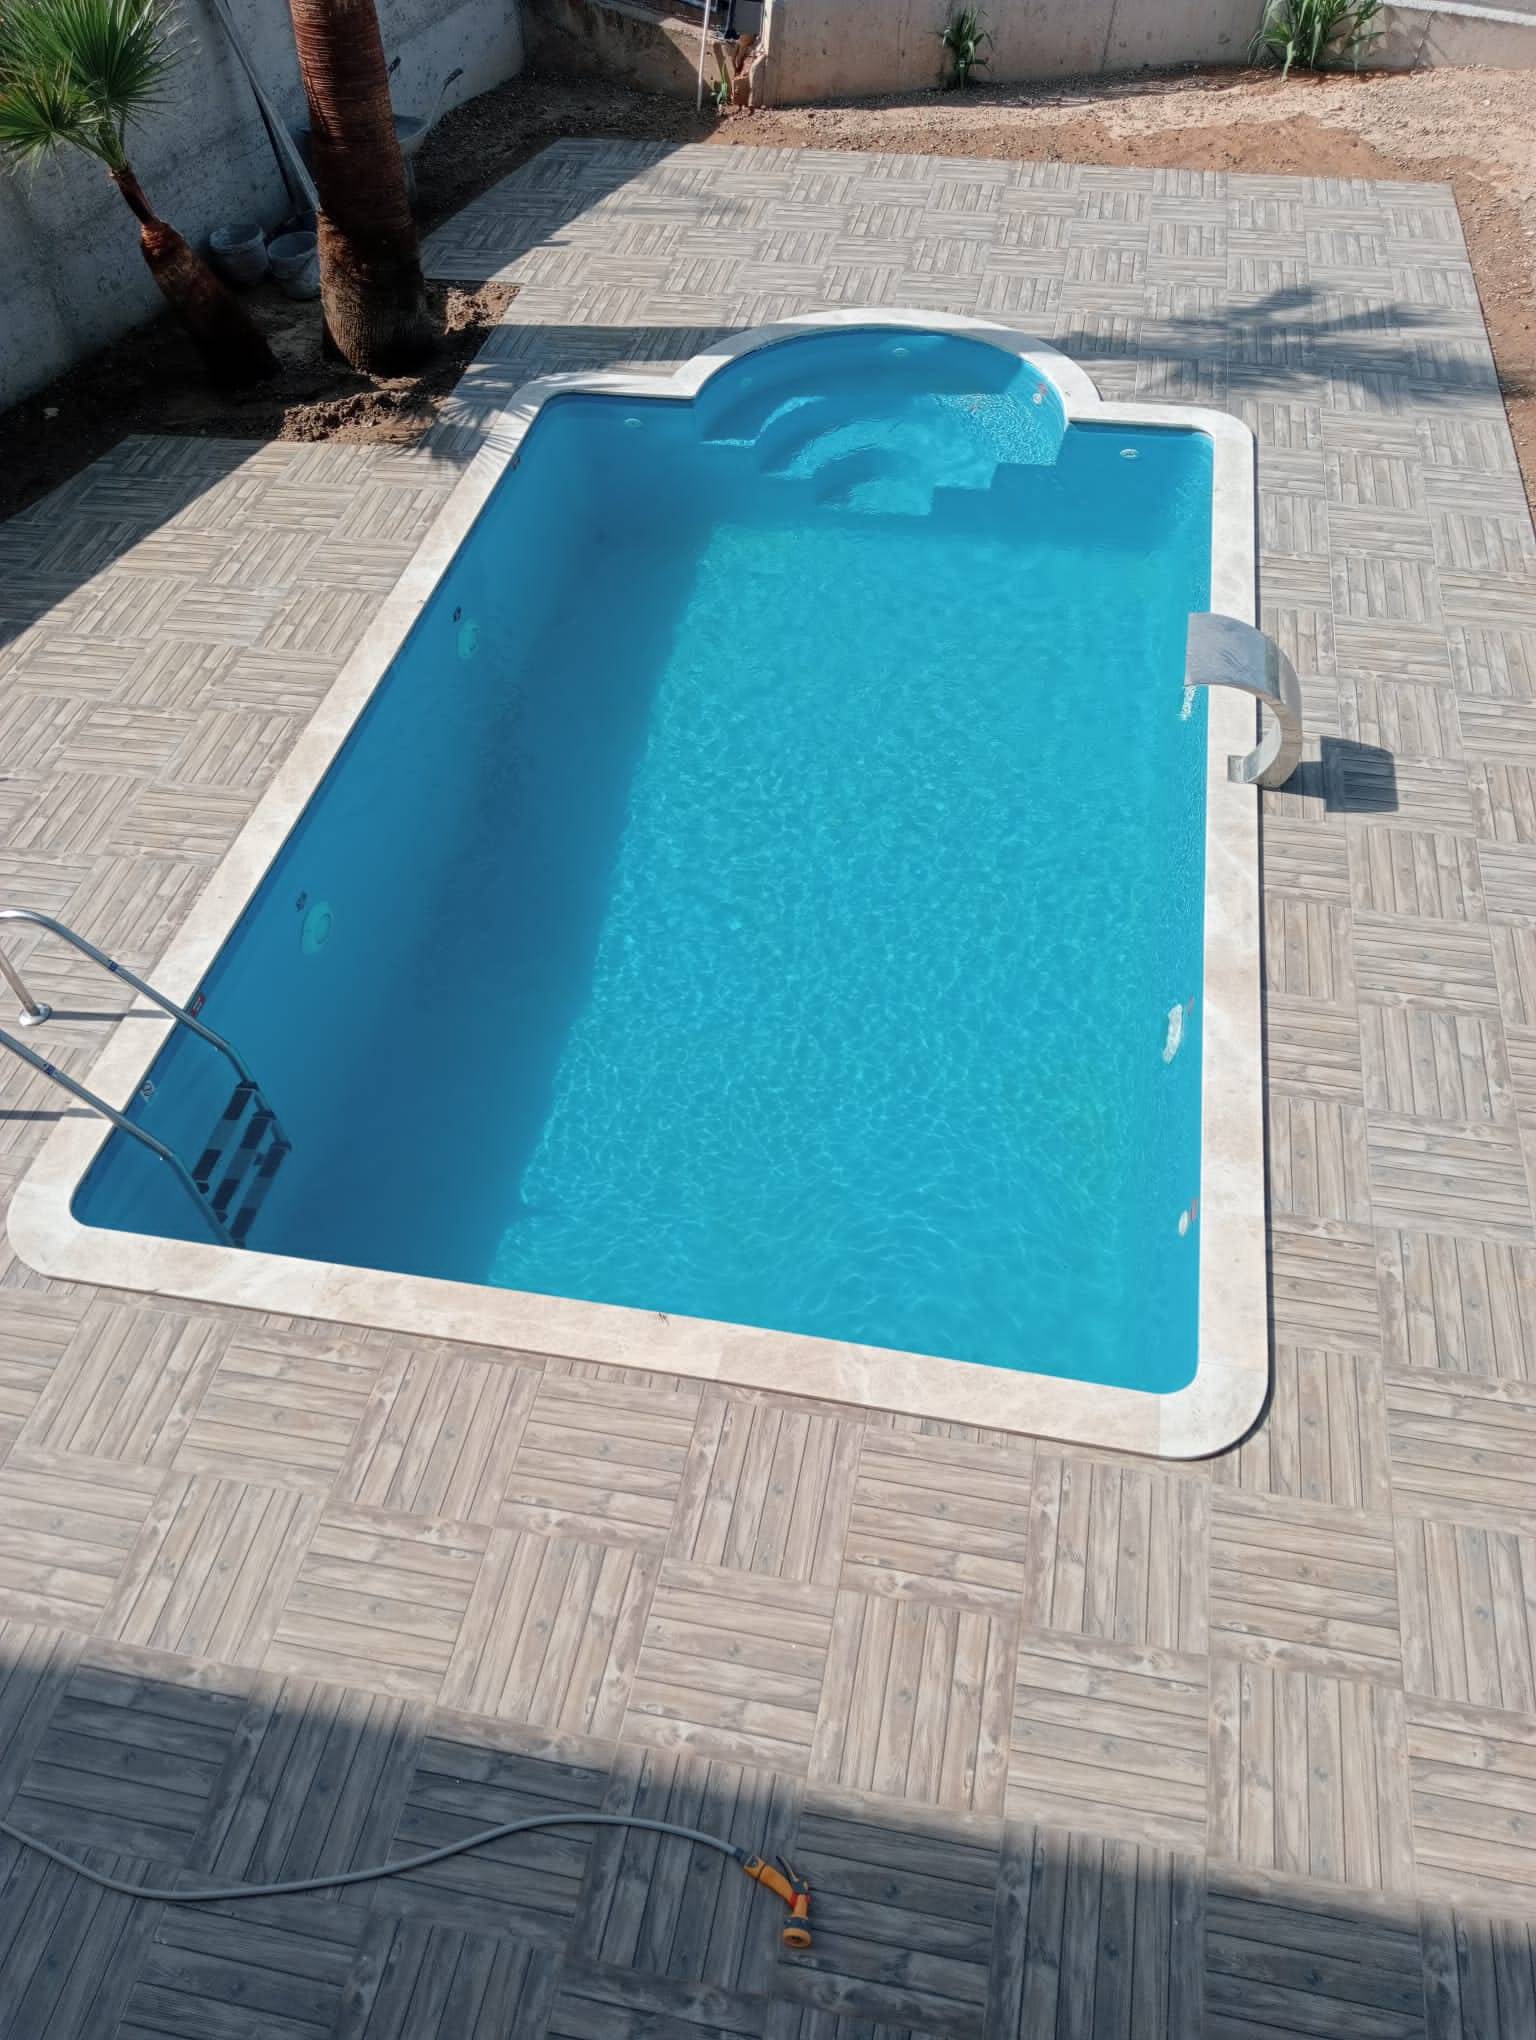 GÜZELBAHÇE /İZMİR Fiber Polyester Moneblok Yüzme Havuzu Çalışmamız 